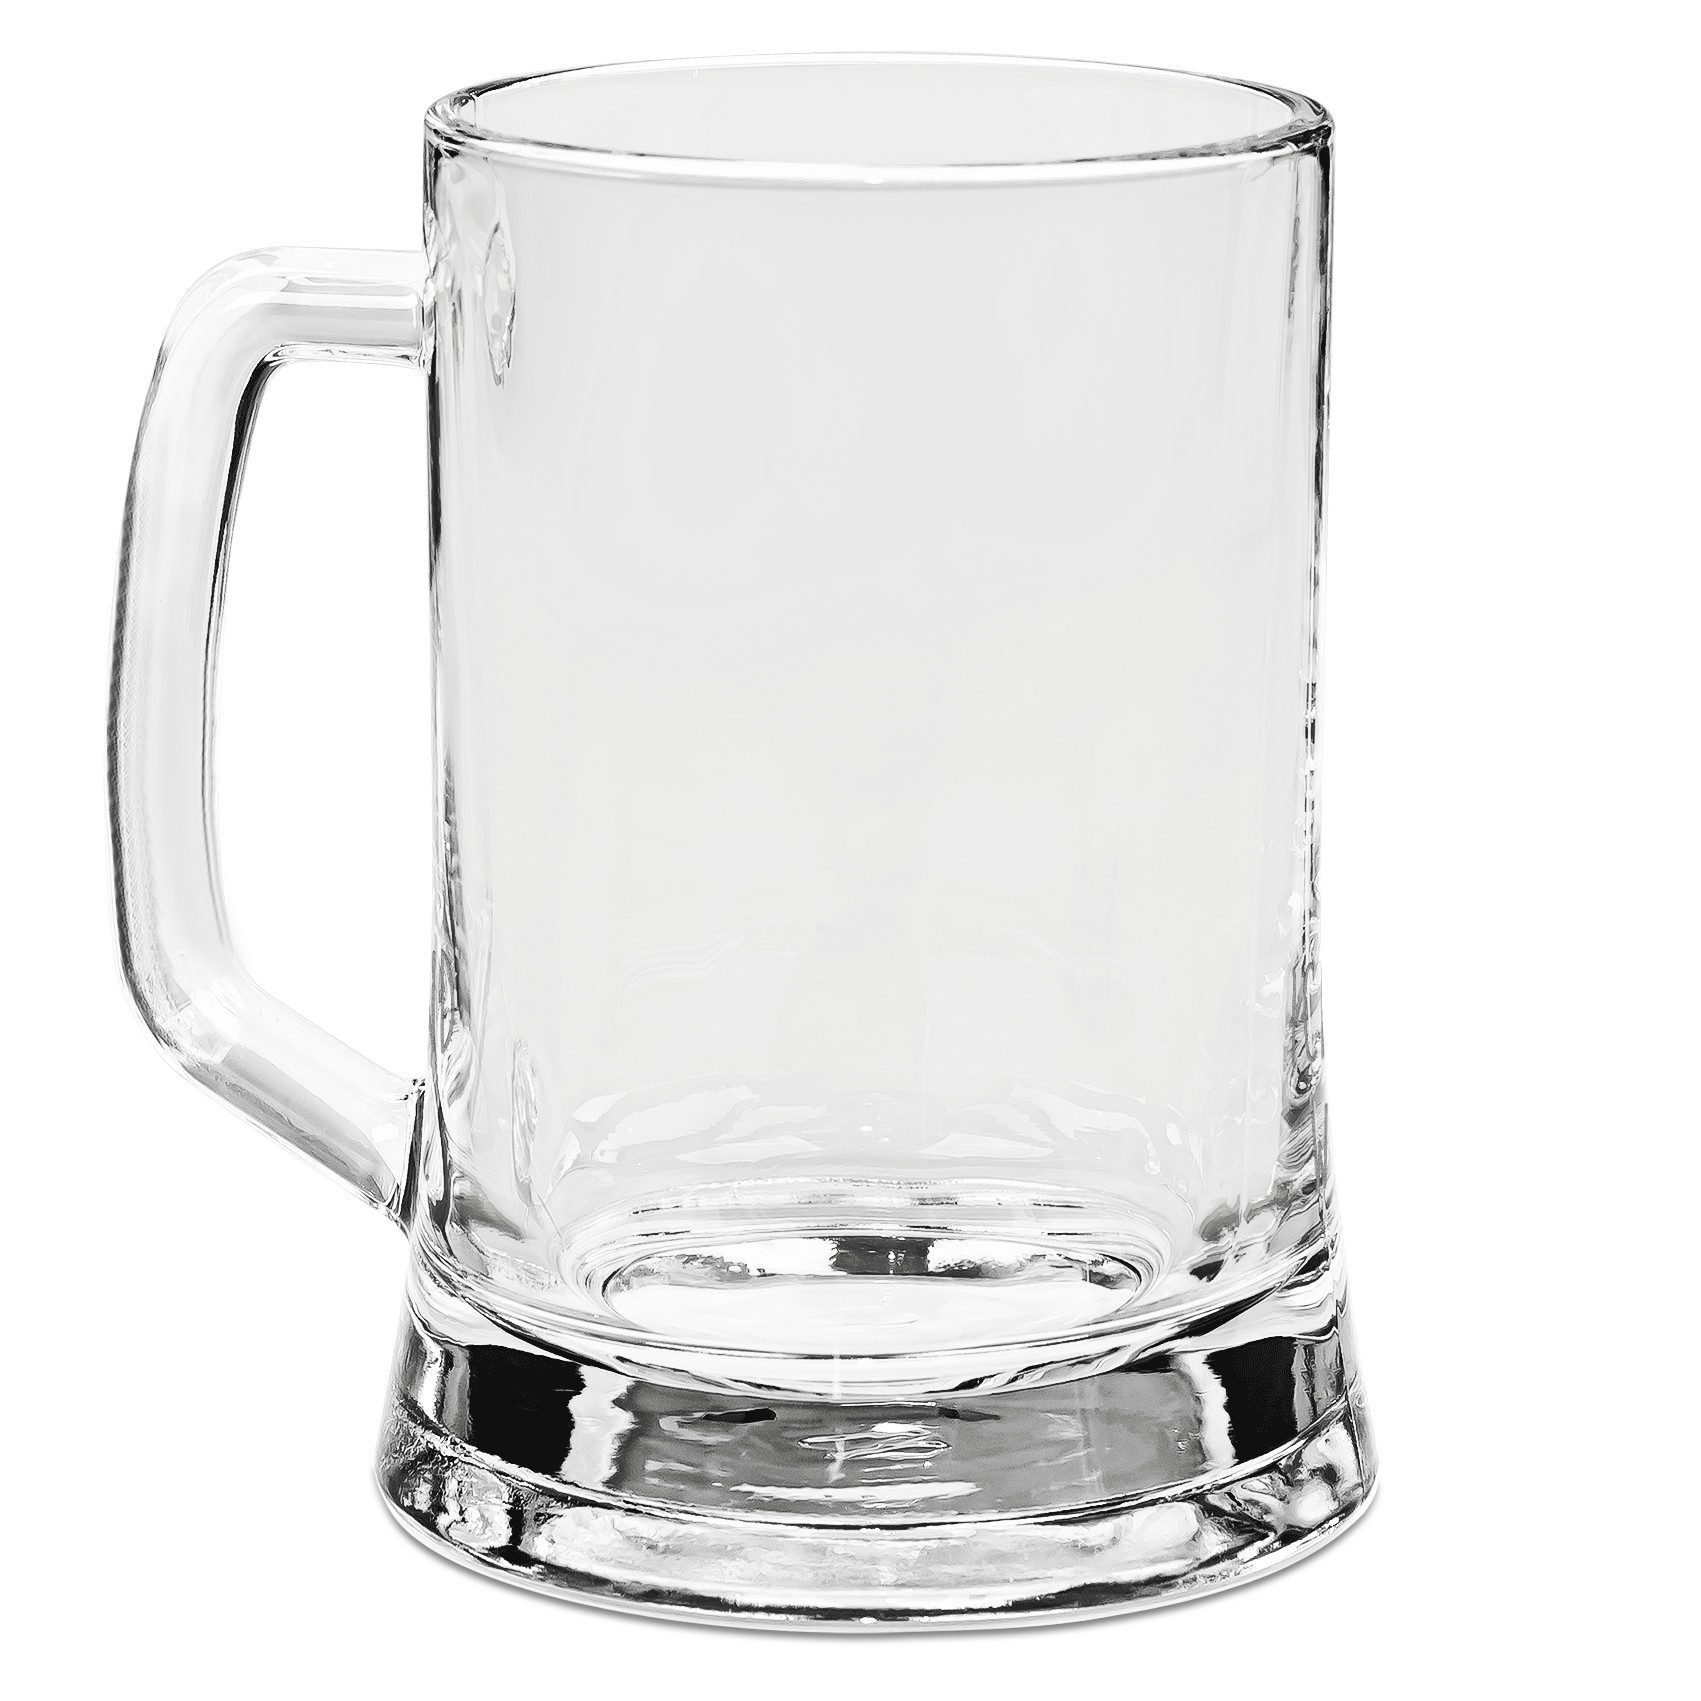 Mr. & Mrs. Panda Bierkrug Einhorn Glauben - Transparent - Geschenk, Bierkrug Glas, Einhörner, E, Premium Glas, Elegantes Design